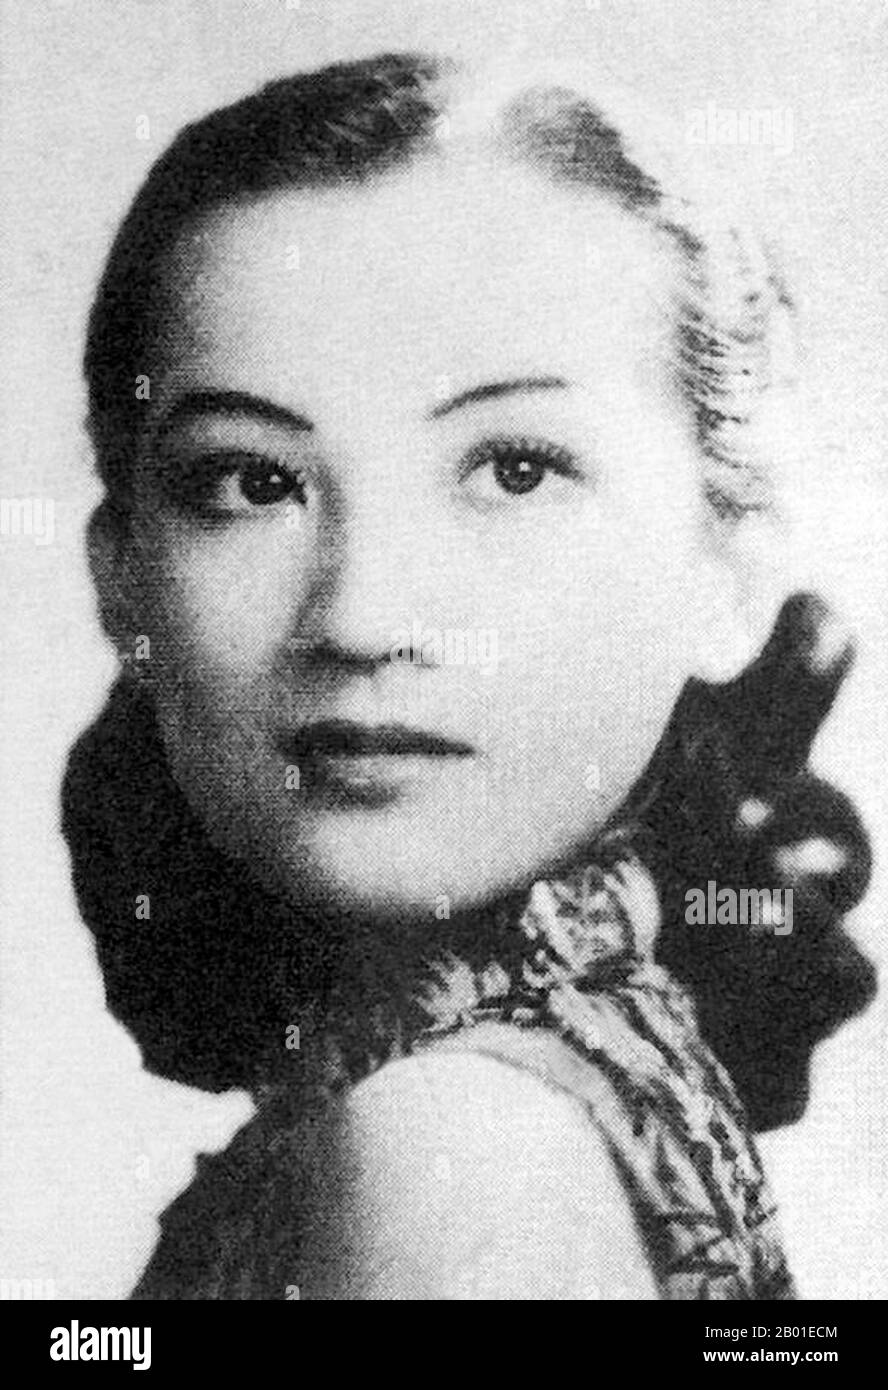 China: Zhou Xuan (周璇, 1 de agosto de 1918 - 22 de septiembre de 1957), cantante y actriz china, 1940. En la década de 1940s, se había convertido en una de las siete grandes estrellas cantoras de China. Ella es probablemente la más conocida de los siete, ya que tuvo una carrera cinematográfica concurrente hasta 1953. Zhou nació como Su Pu (蘇璞), pero fue separada de sus padres naturales a una edad temprana y criada por padres adoptivos. Pasó toda su vida buscando a sus padres biológicos, pero su parentesco nunca se estableció hasta después de su muerte. A la edad de 13 años tomó a Zhou Xuan como su nombre artístico, 'Xuan' que significa 'hermoso jade'. Foto de stock